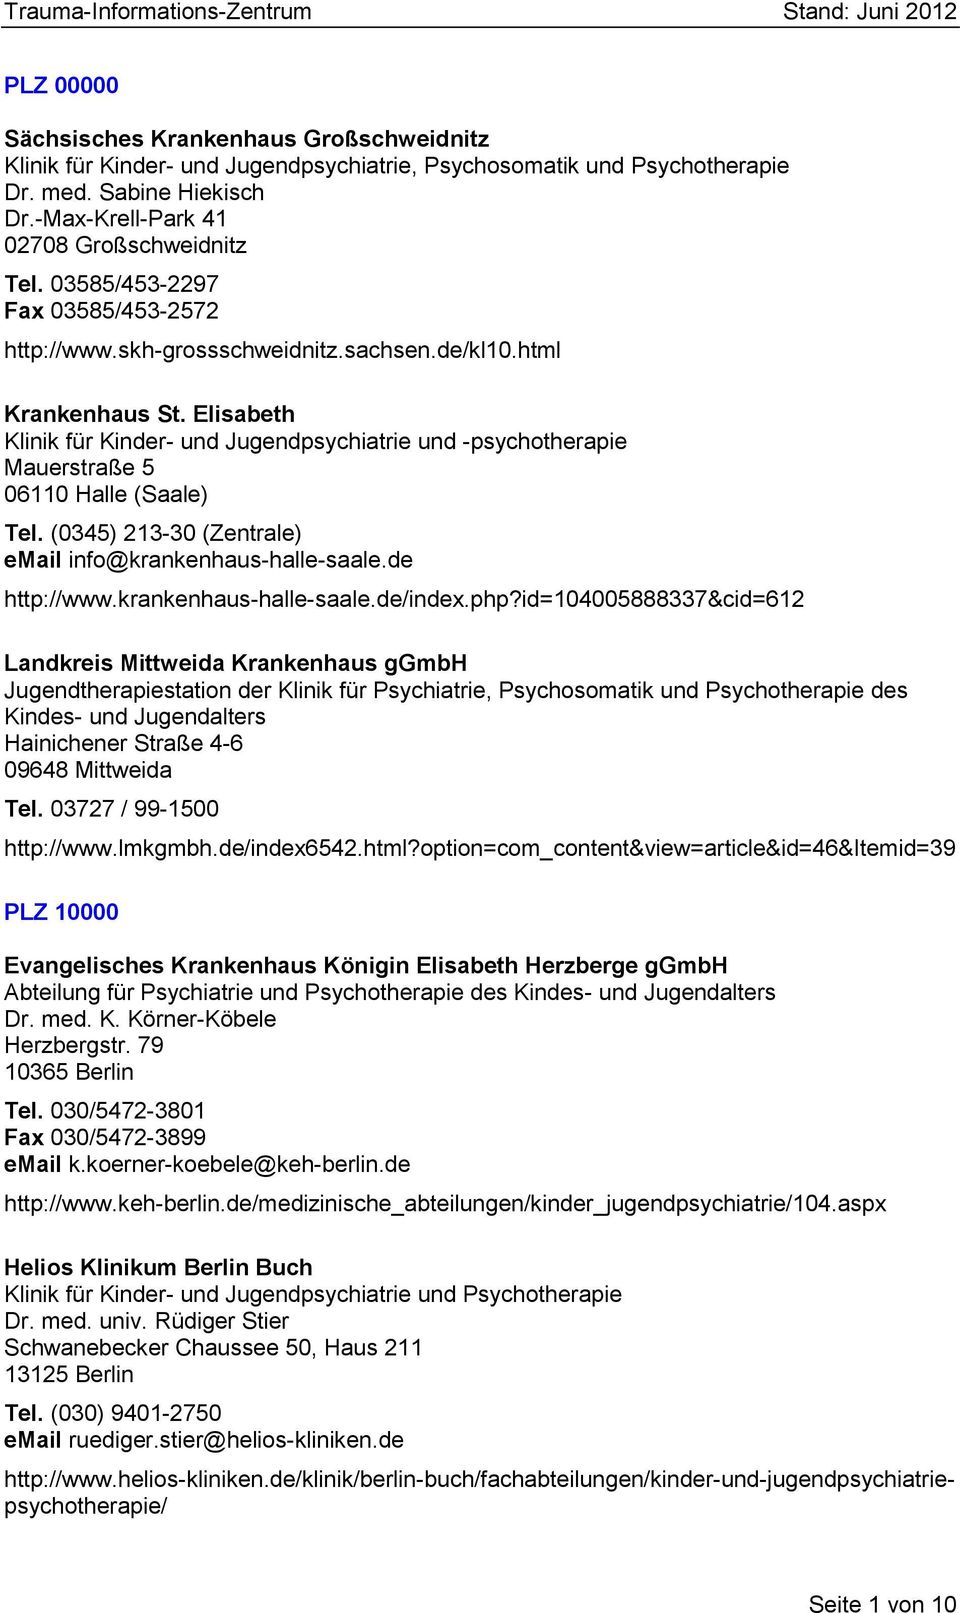 Elisabeth Klinik für Kinder- und Jugendpsychiatrie und -psychotherapie Mauerstraße 5 06110 Halle (Saale) Tel. (0345) 213-30 (Zentrale) email info@krankenhaus-halle-saale.de http://www.